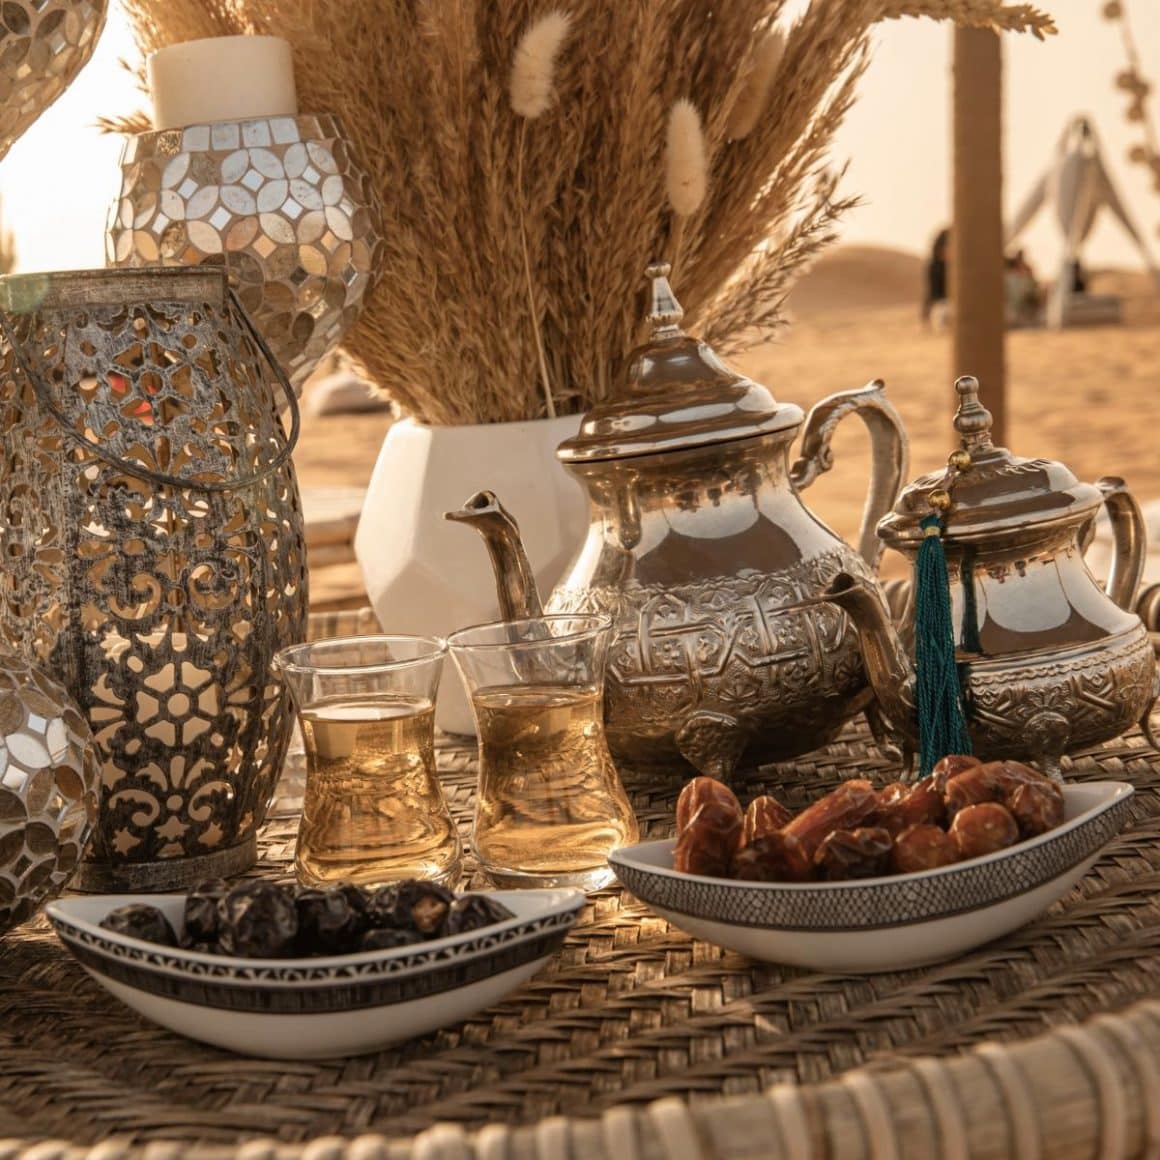 mai multe vase traditionale sunt asezate pe o masă de răchită în restaurantul din desertul dubaiului